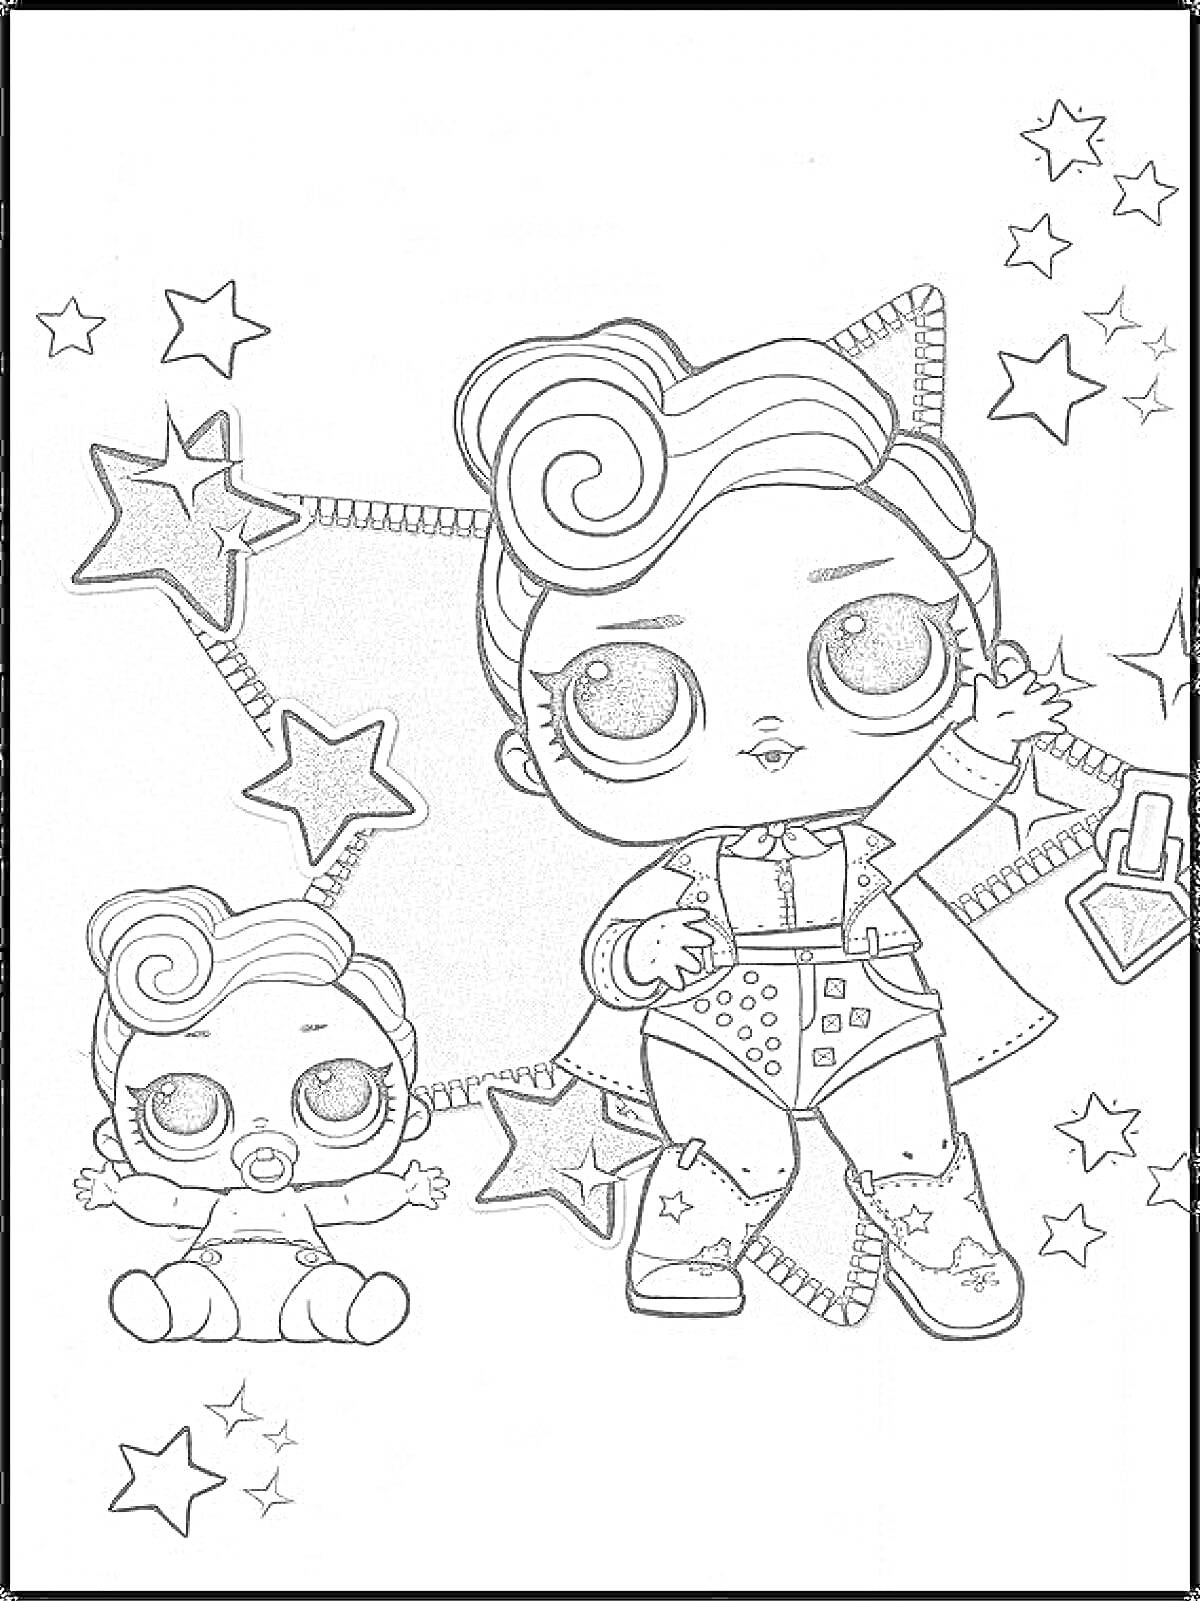 Раскраска Новогодняя кукла ЛОЛ с маленькой куклой, звездочками и большими глазами